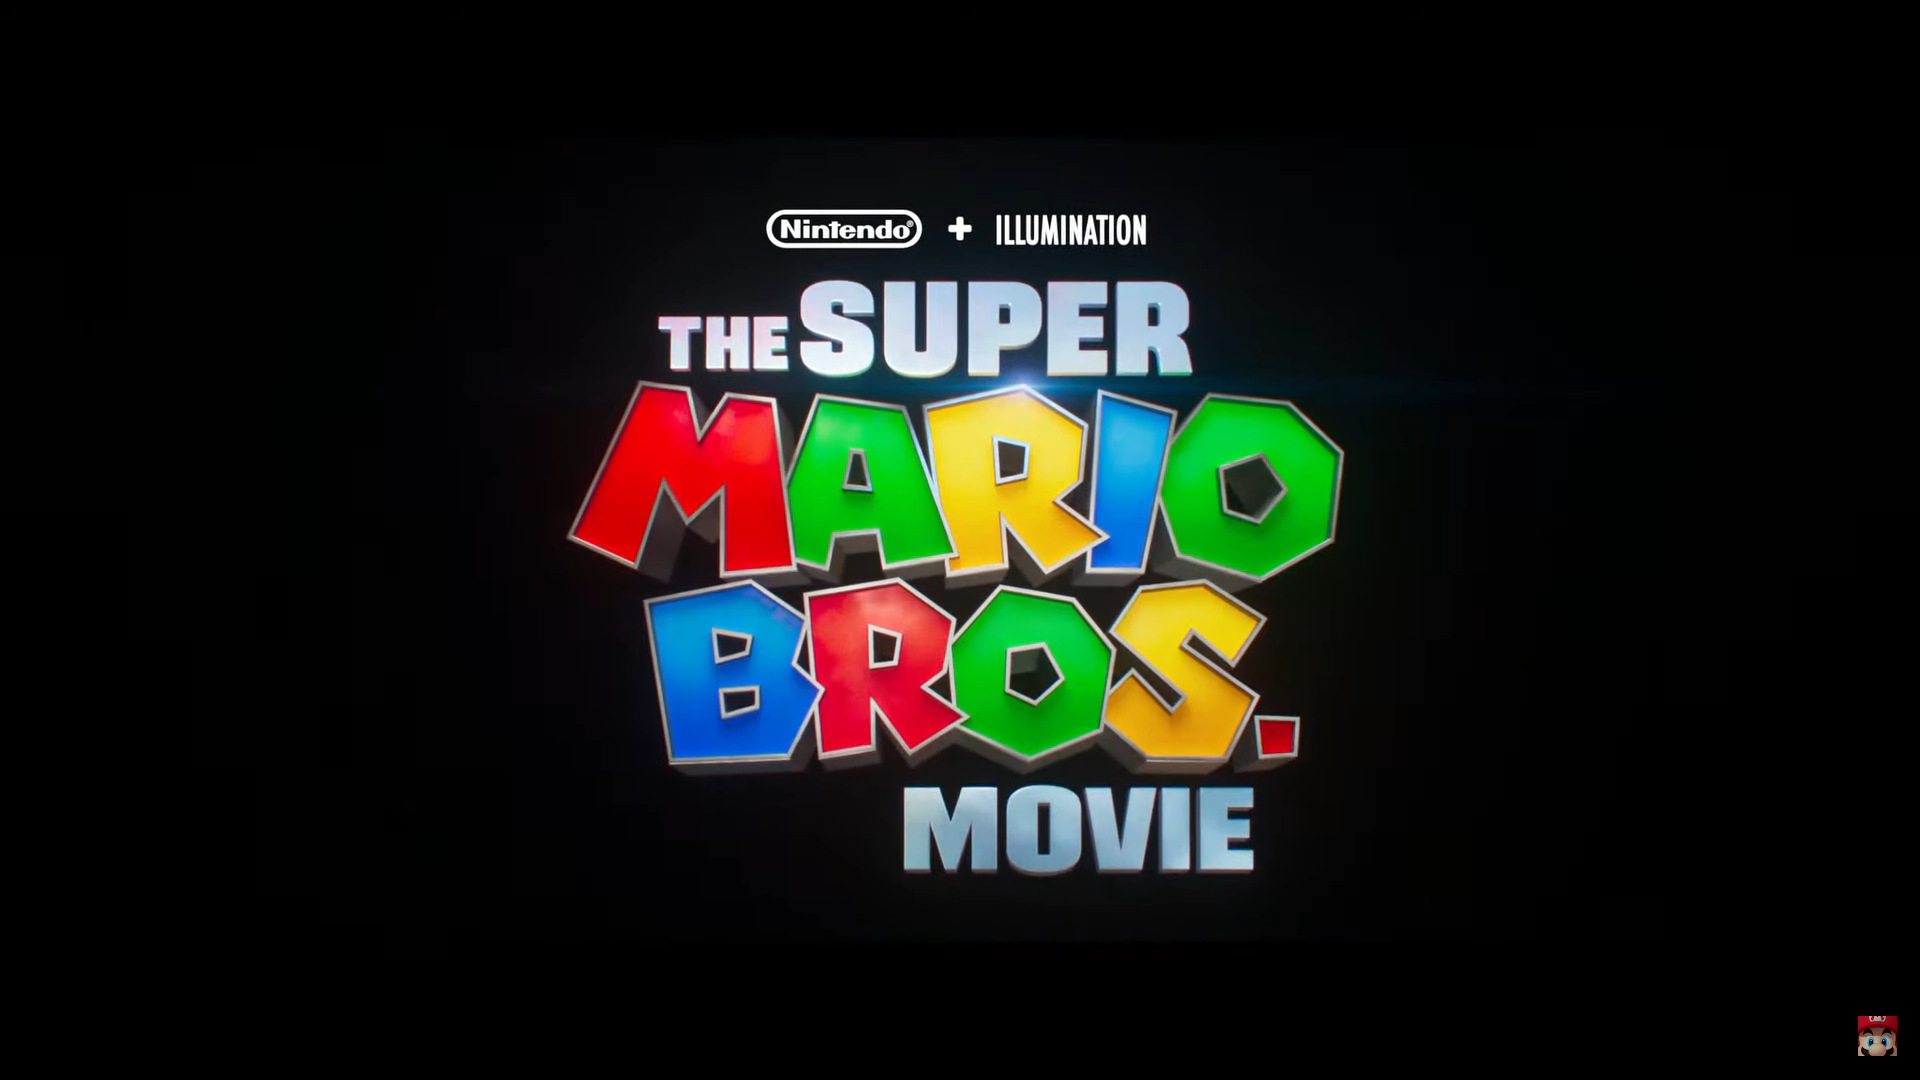 لوگو انیمیشن Super Mario Bros The Movie با زمینه مشکی